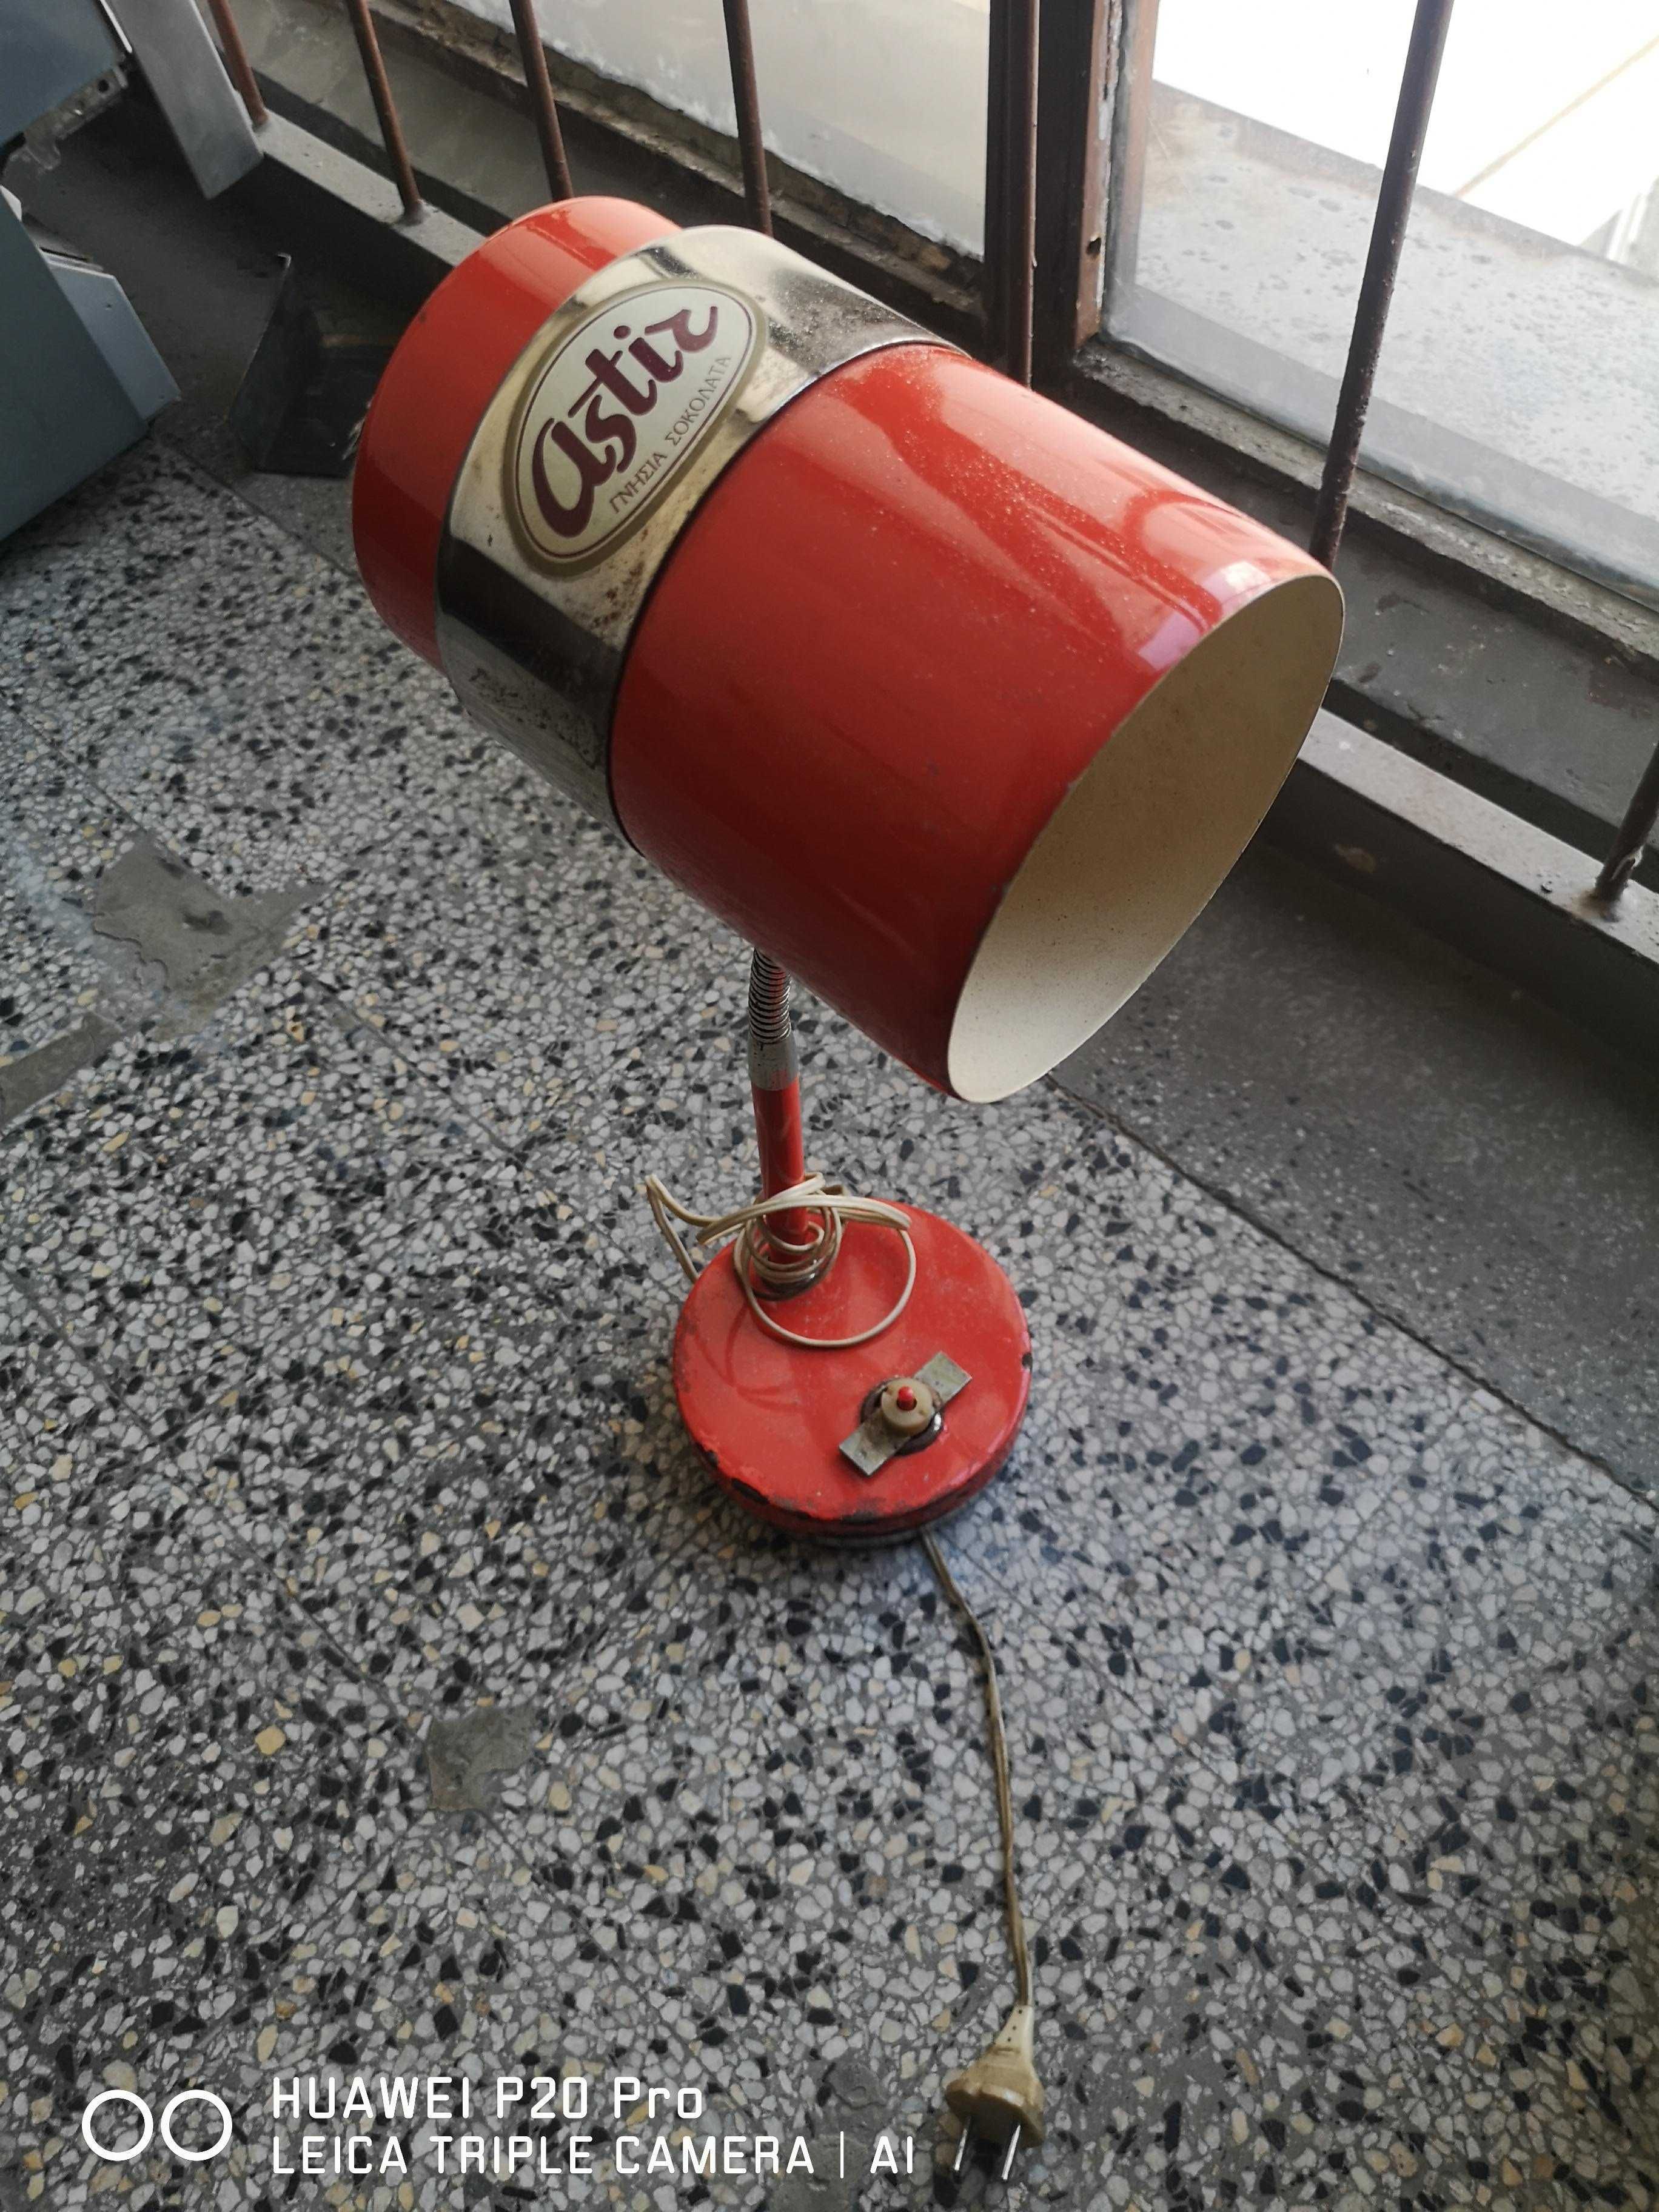 Стара работна лампа